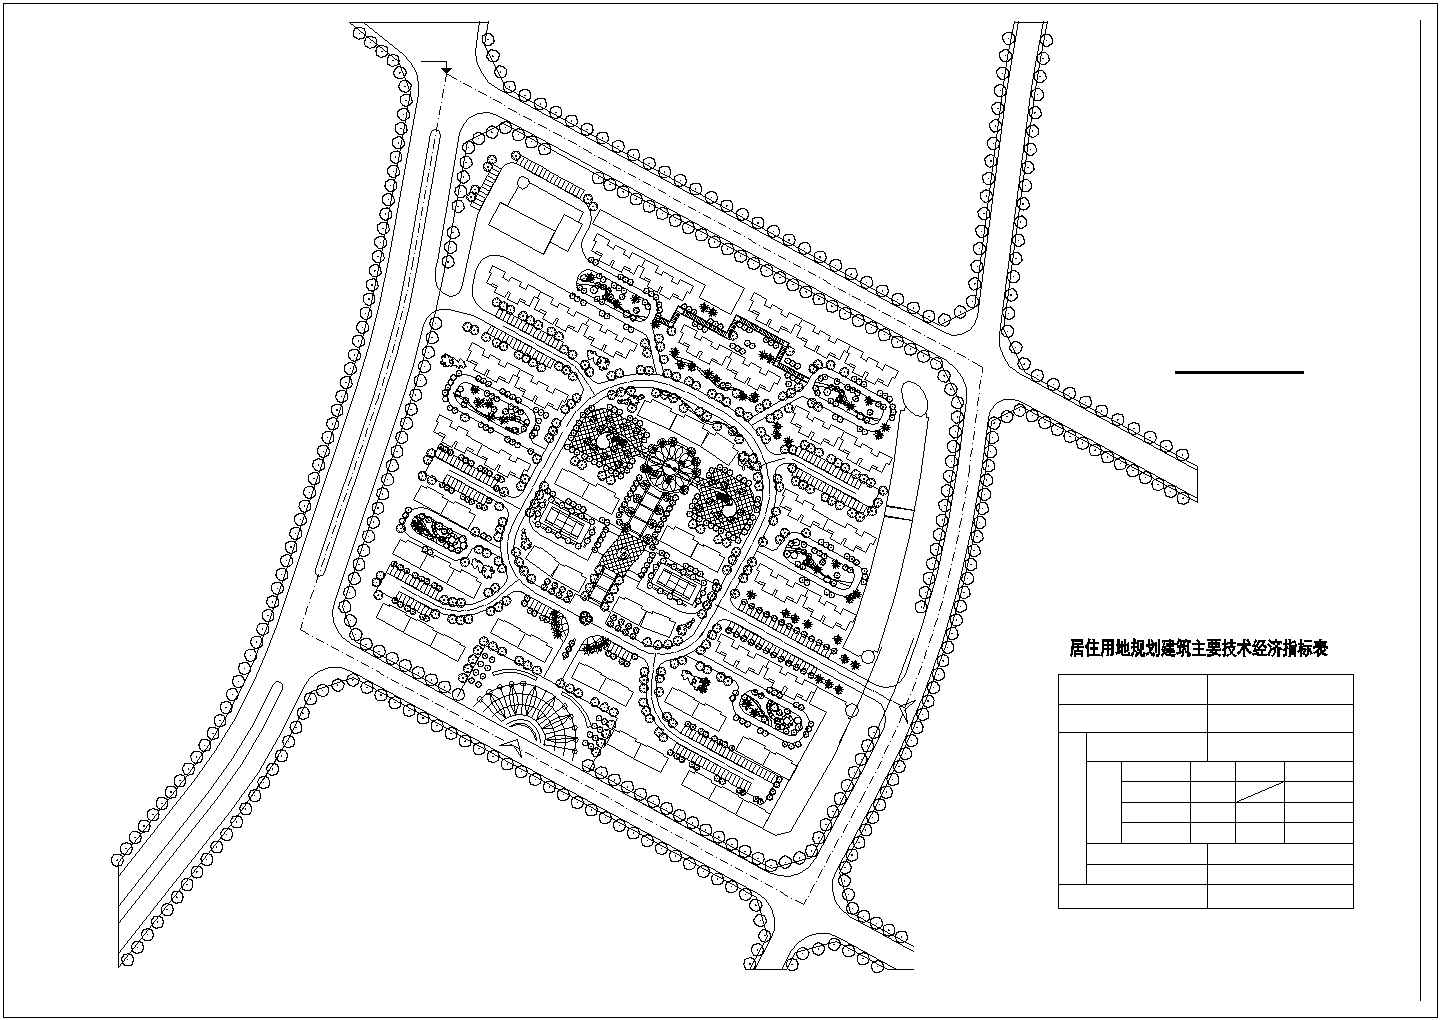 某住宅小区总平面规划设计方案图纸